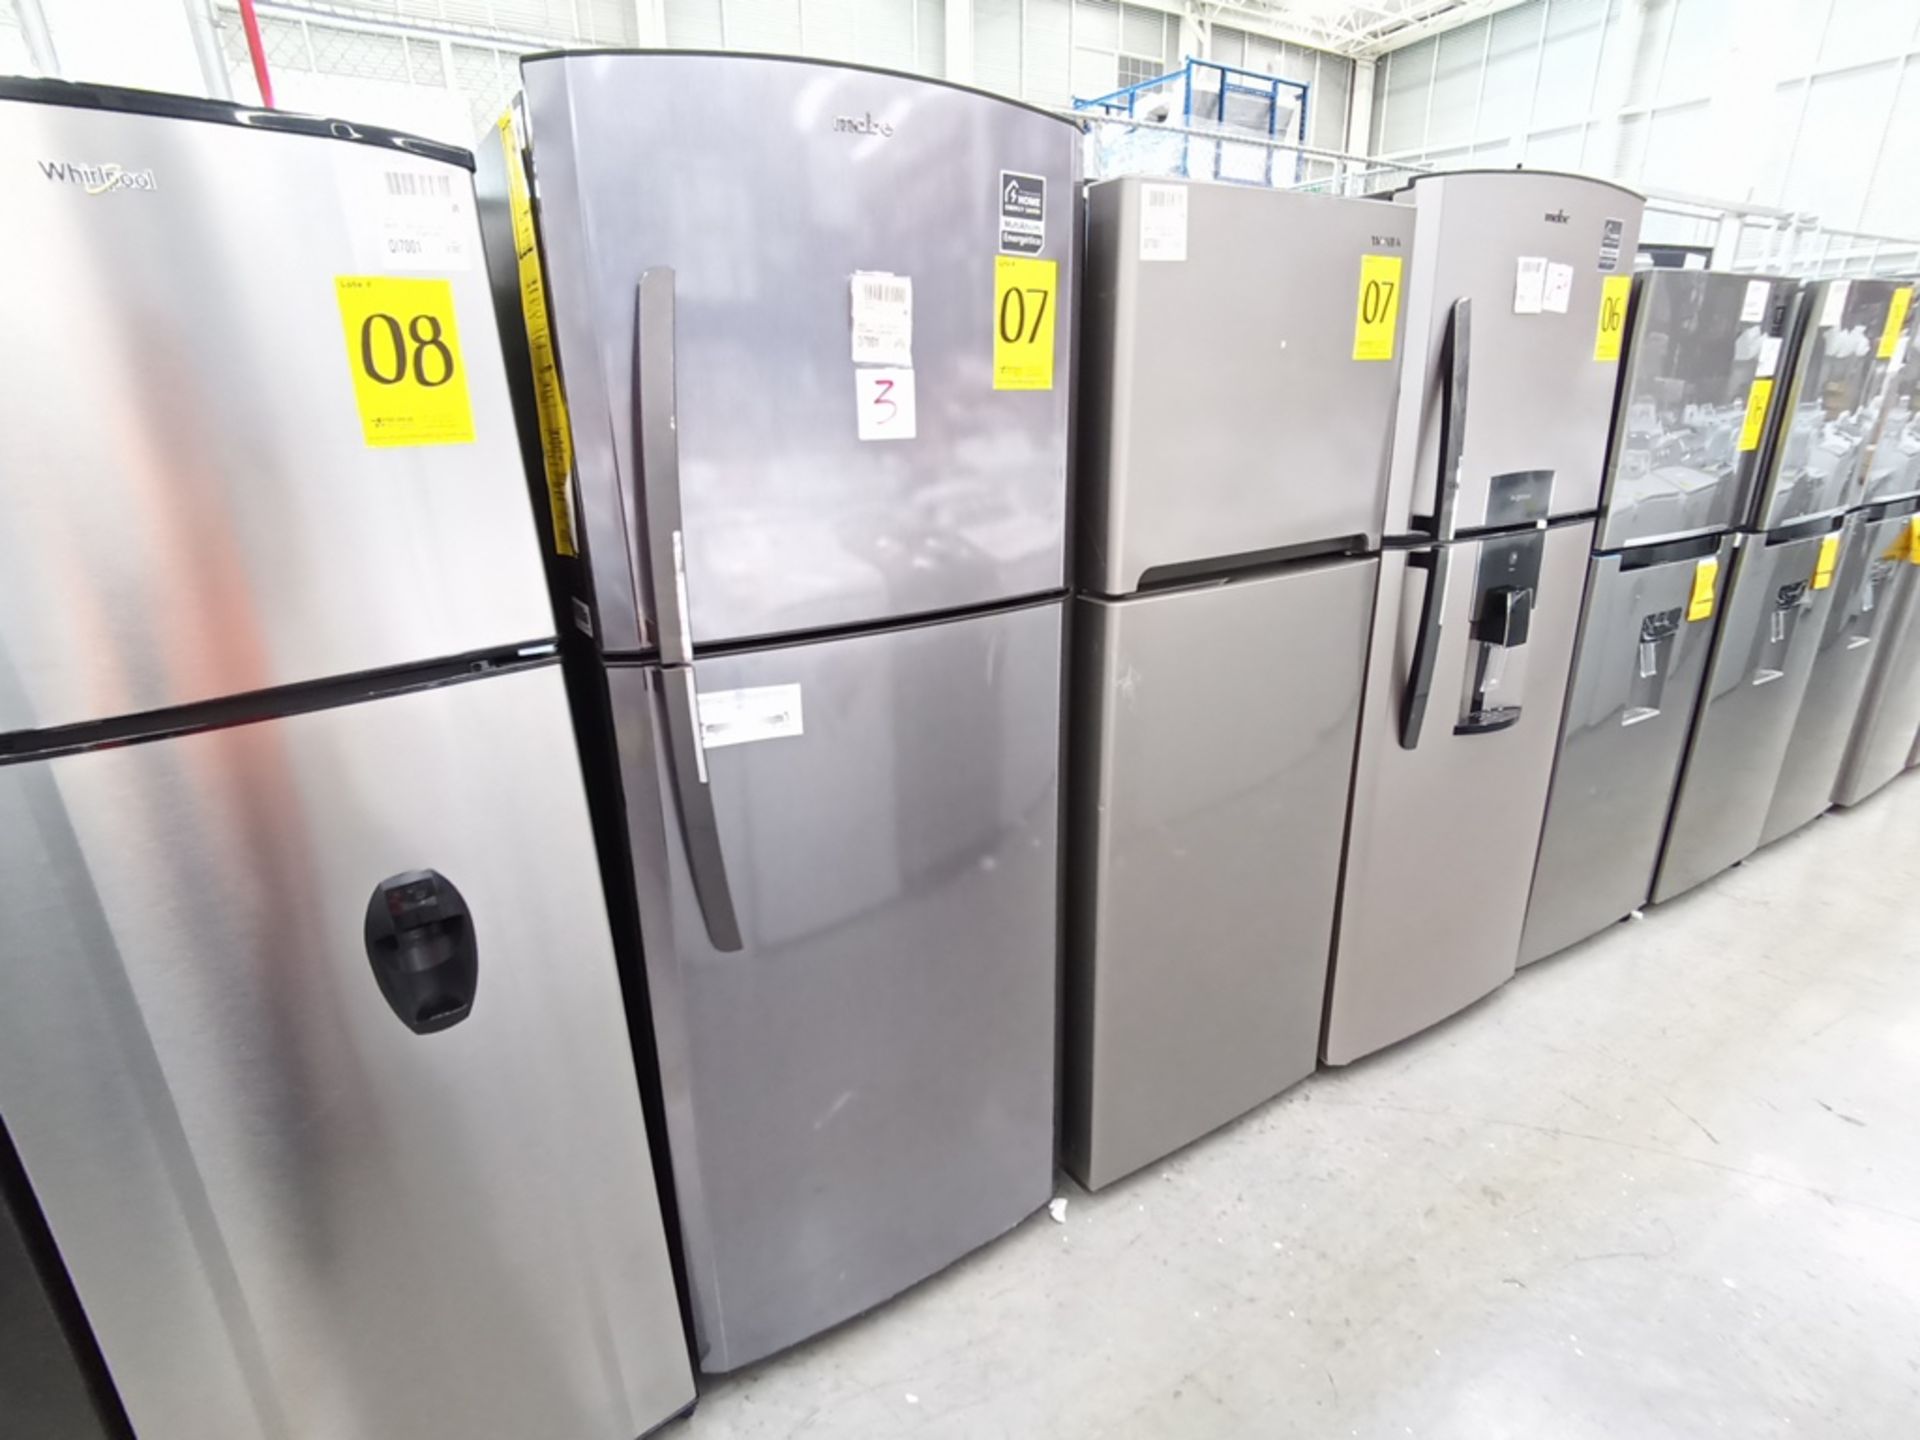 Lote de 2 refrigeradores contiene: 1 Refrigerador con dispensador de agua, Marca Winia, Modelo DFR-